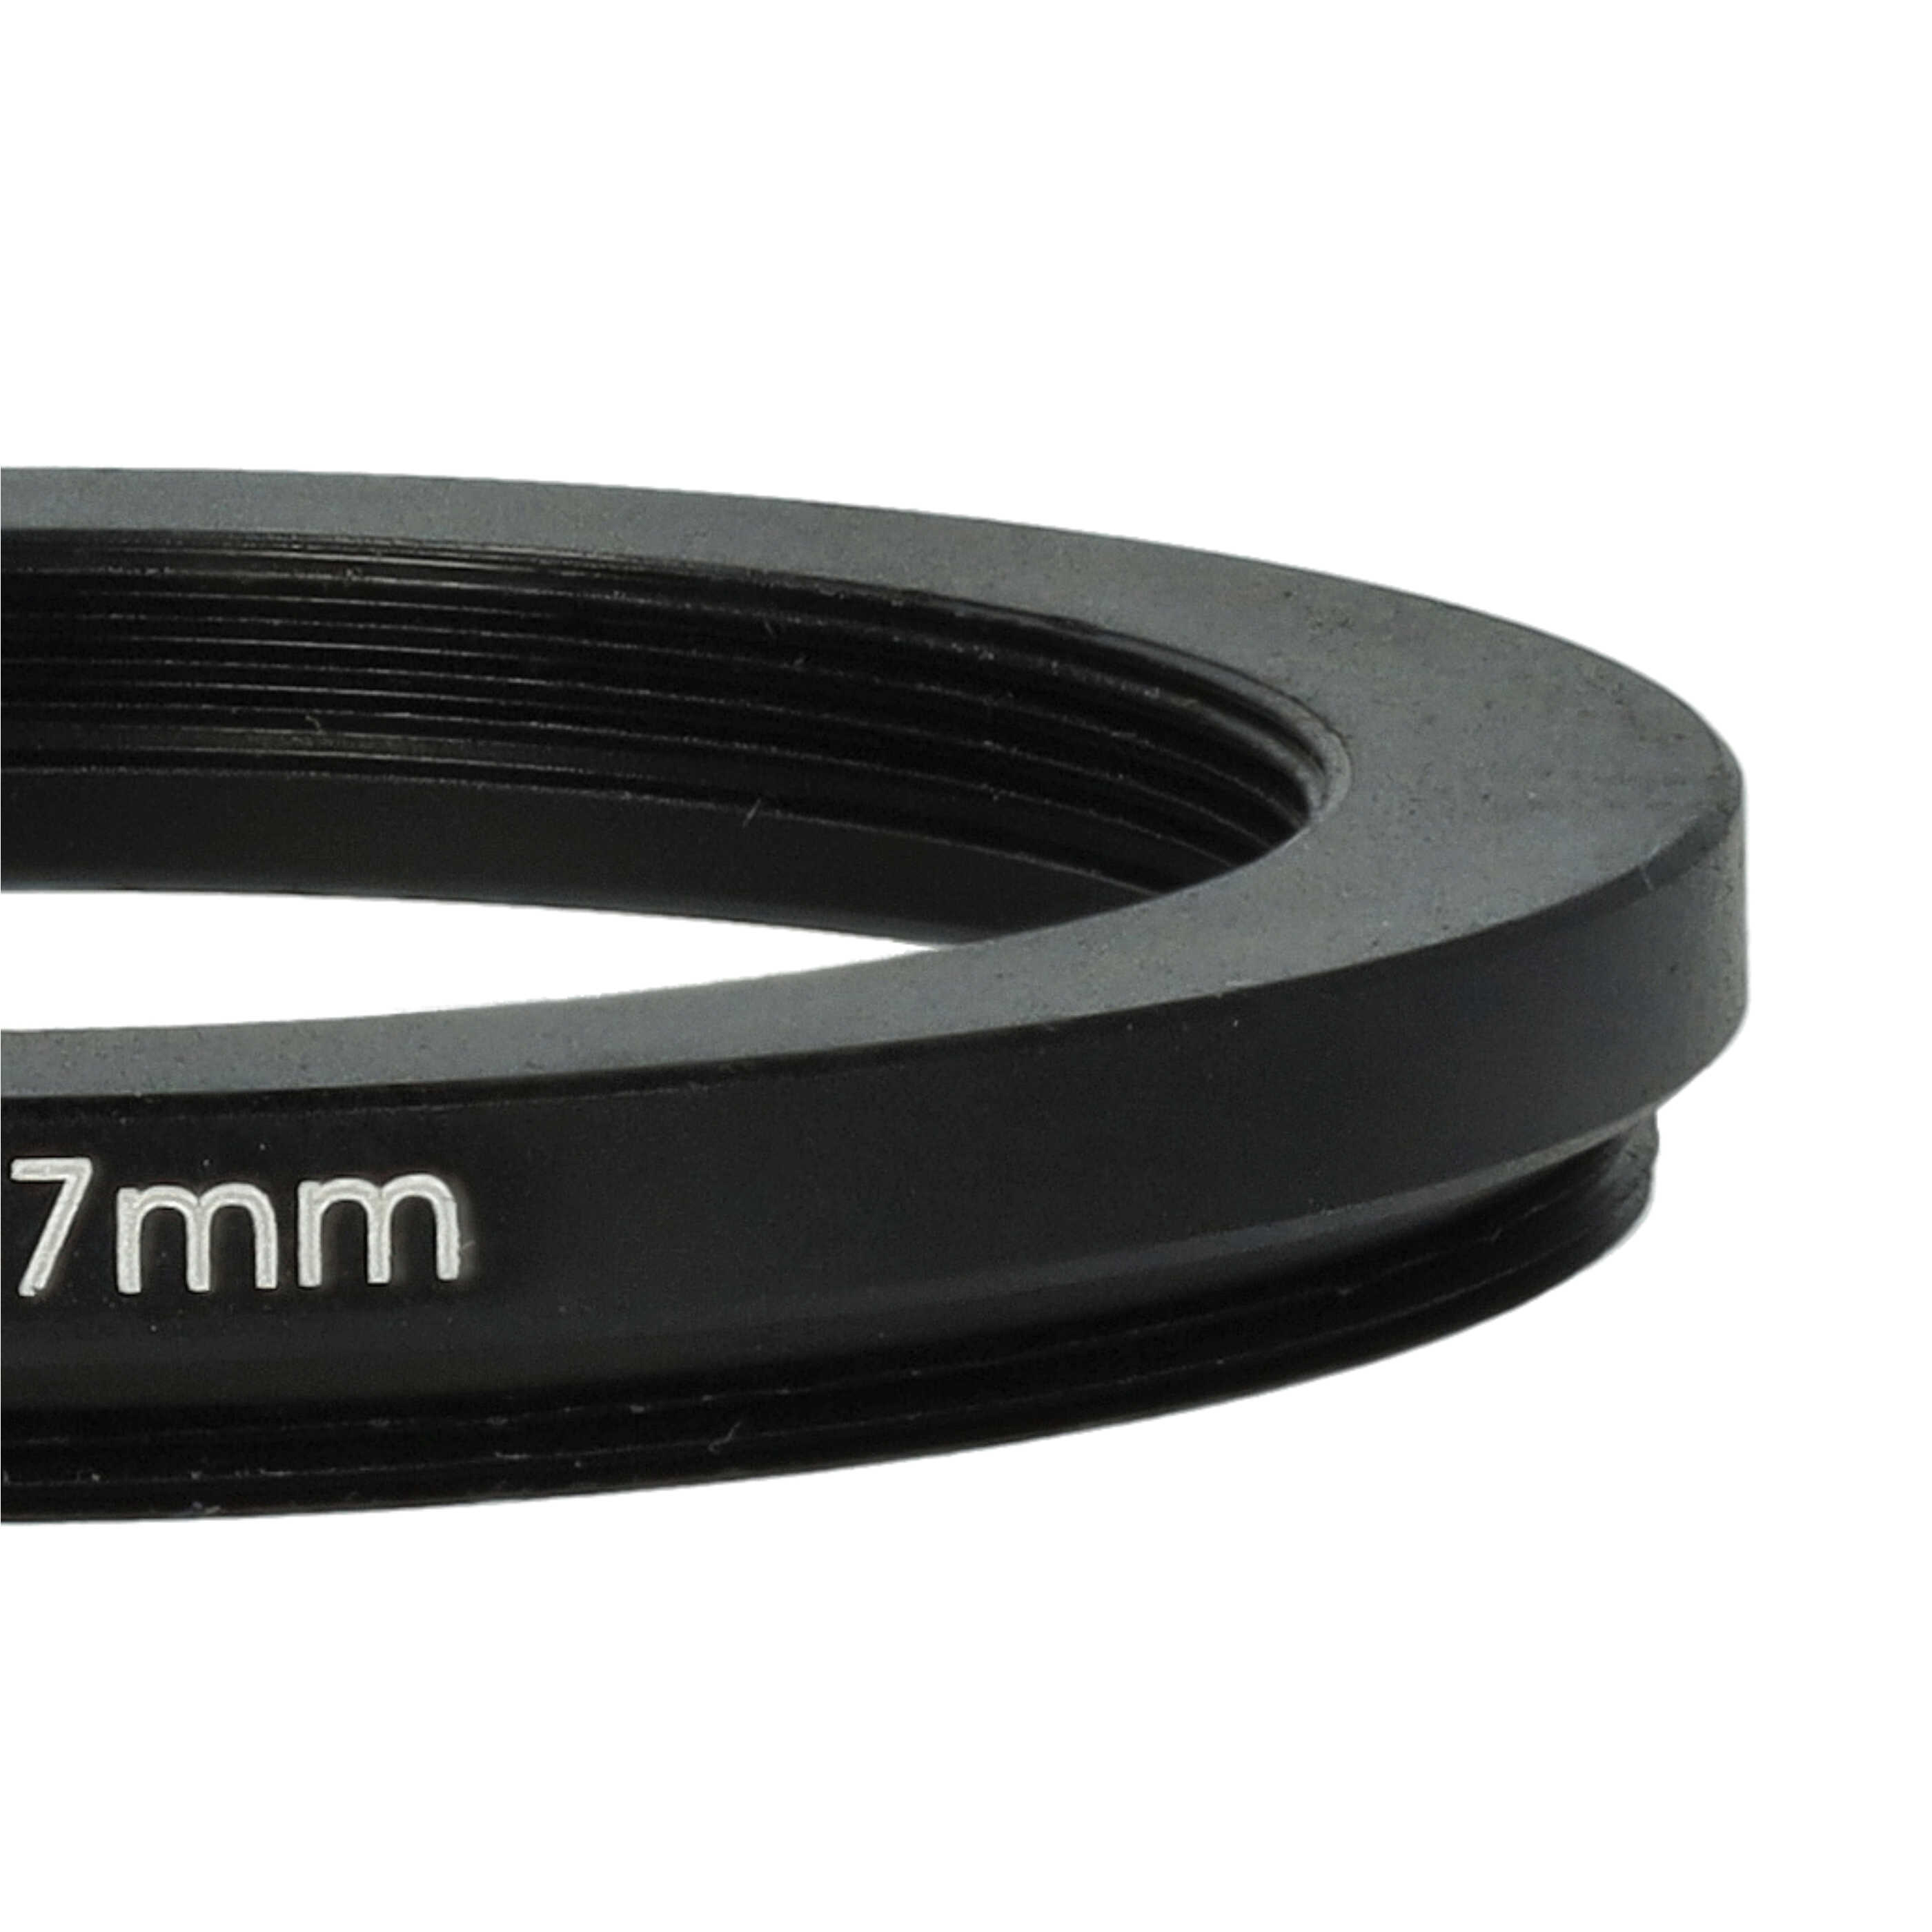 Redukcja filtrowa adapter Step-Down 46 mm - 37 mm pasująca do obiektywu - metal, czarny